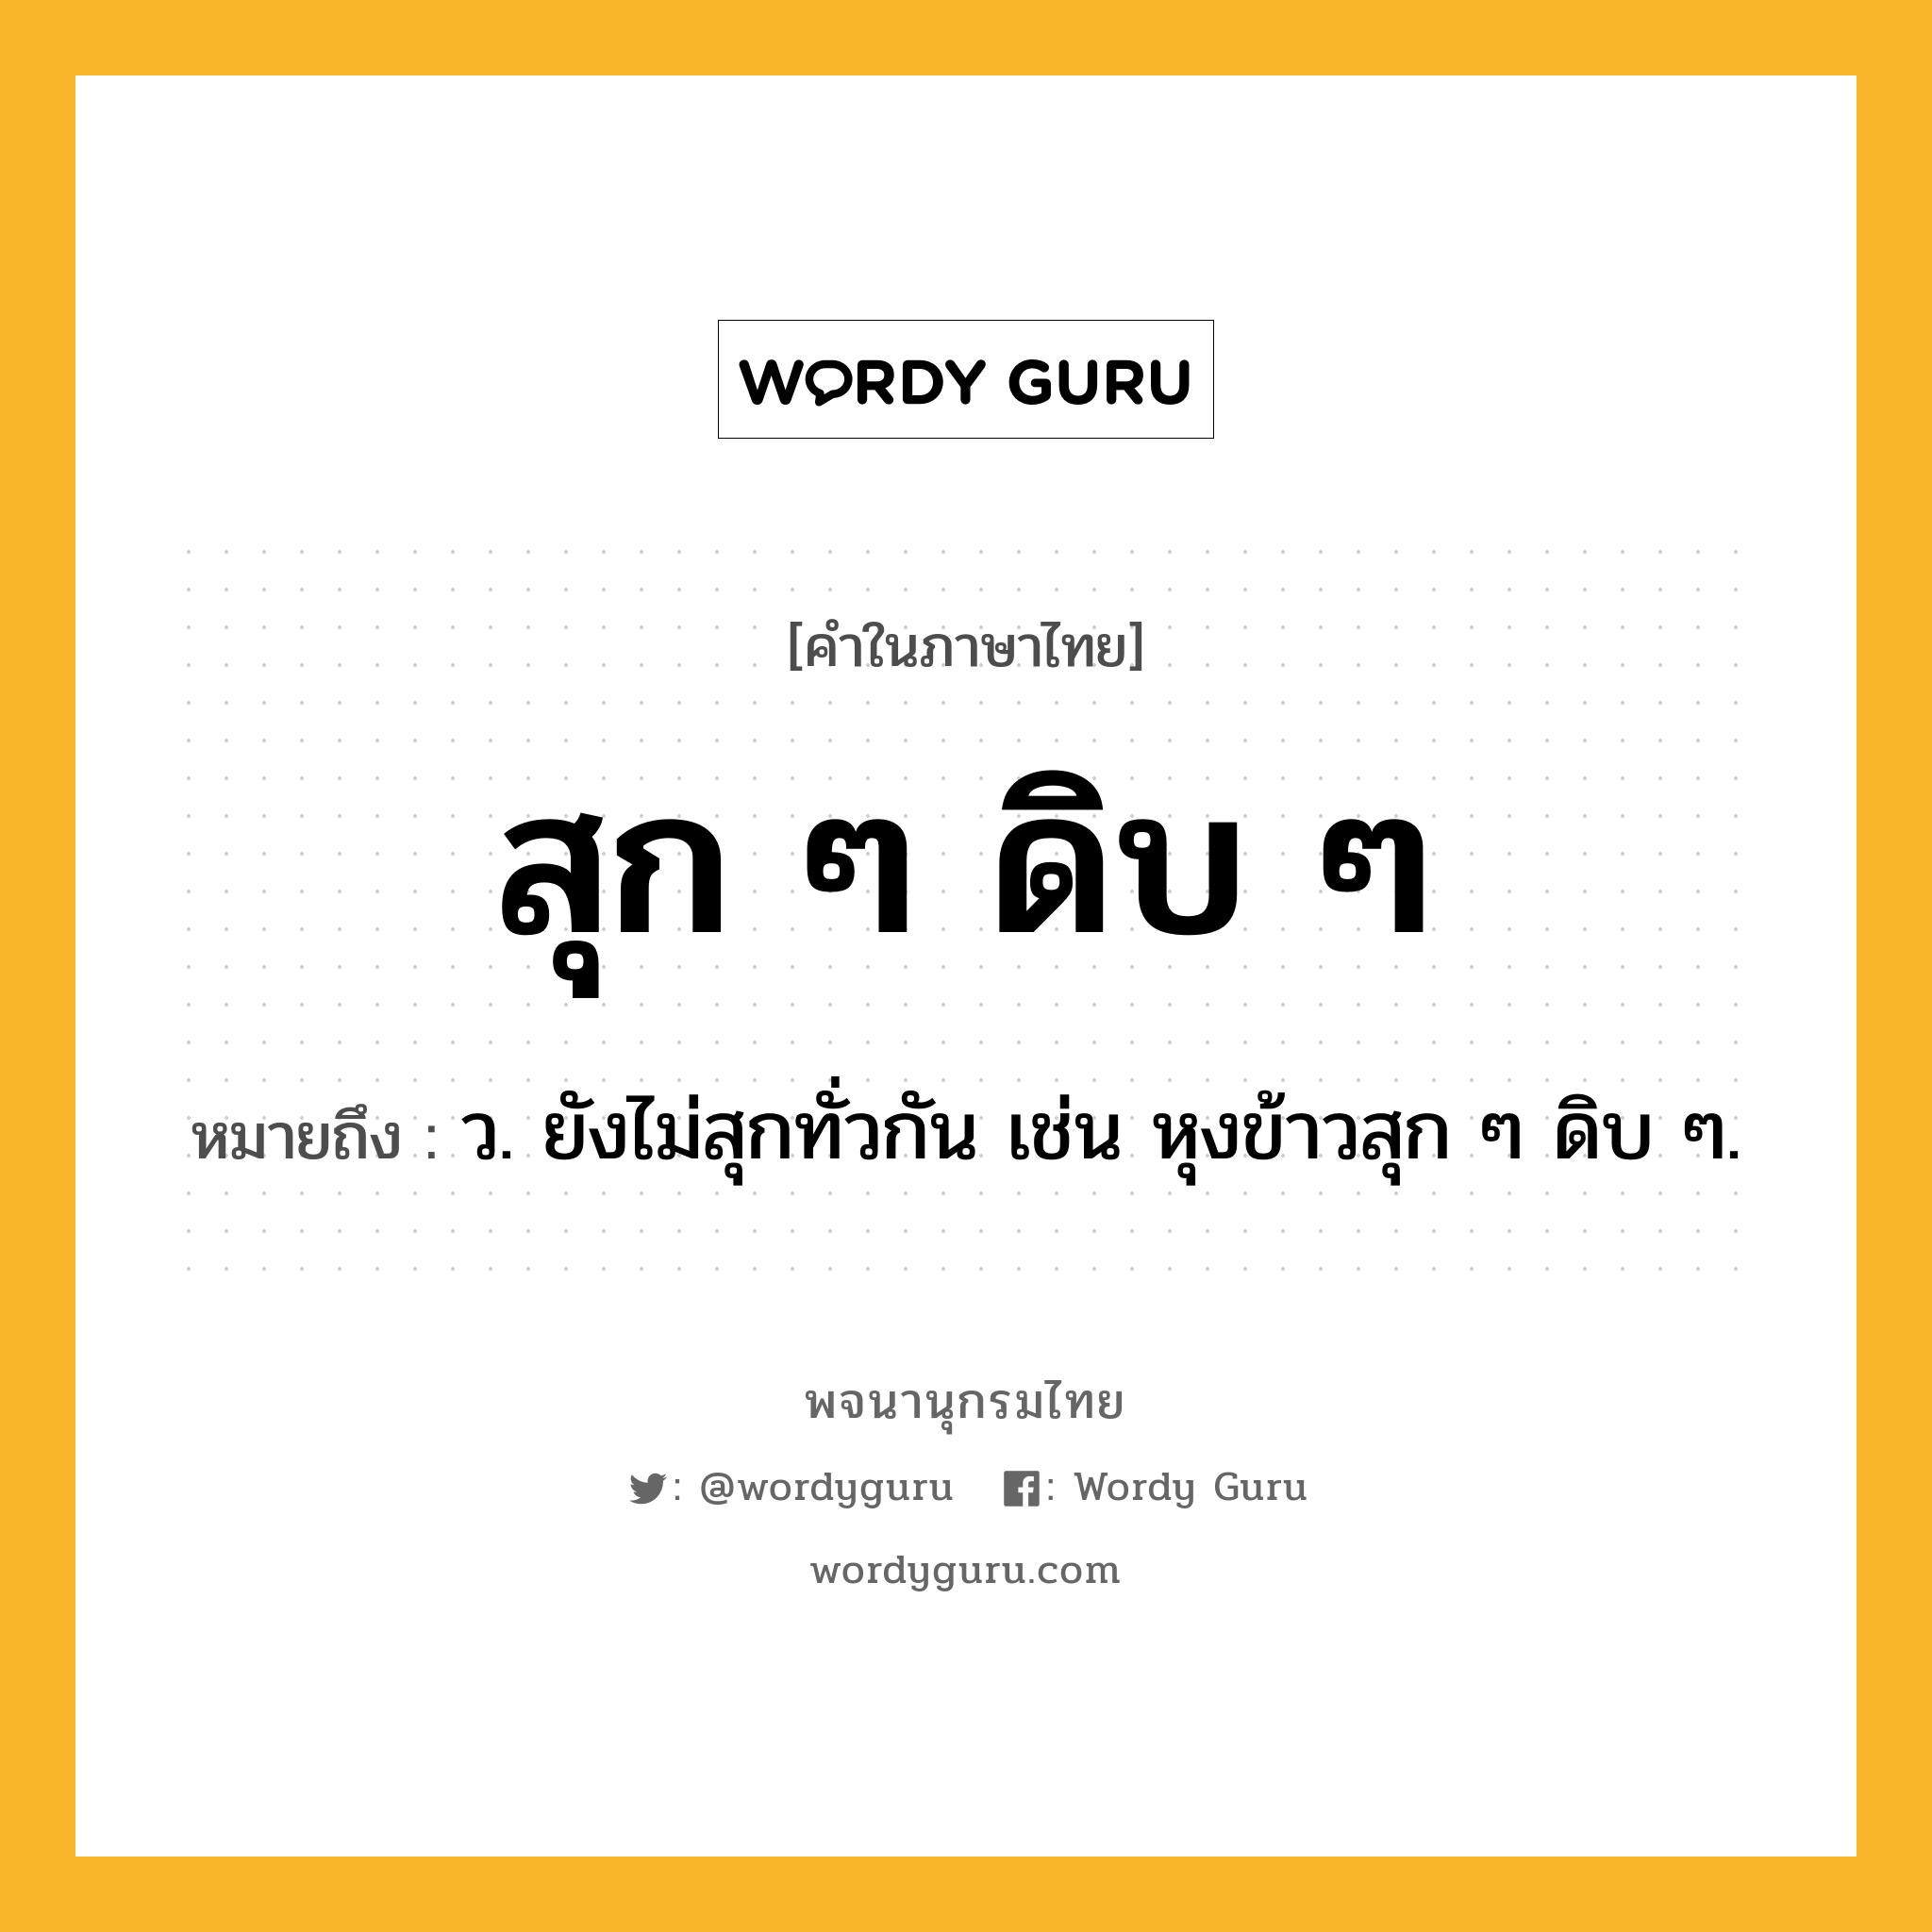 สุก ๆ ดิบ ๆ หมายถึงอะไร?, คำในภาษาไทย สุก ๆ ดิบ ๆ หมายถึง ว. ยังไม่สุกทั่วกัน เช่น หุงข้าวสุก ๆ ดิบ ๆ.